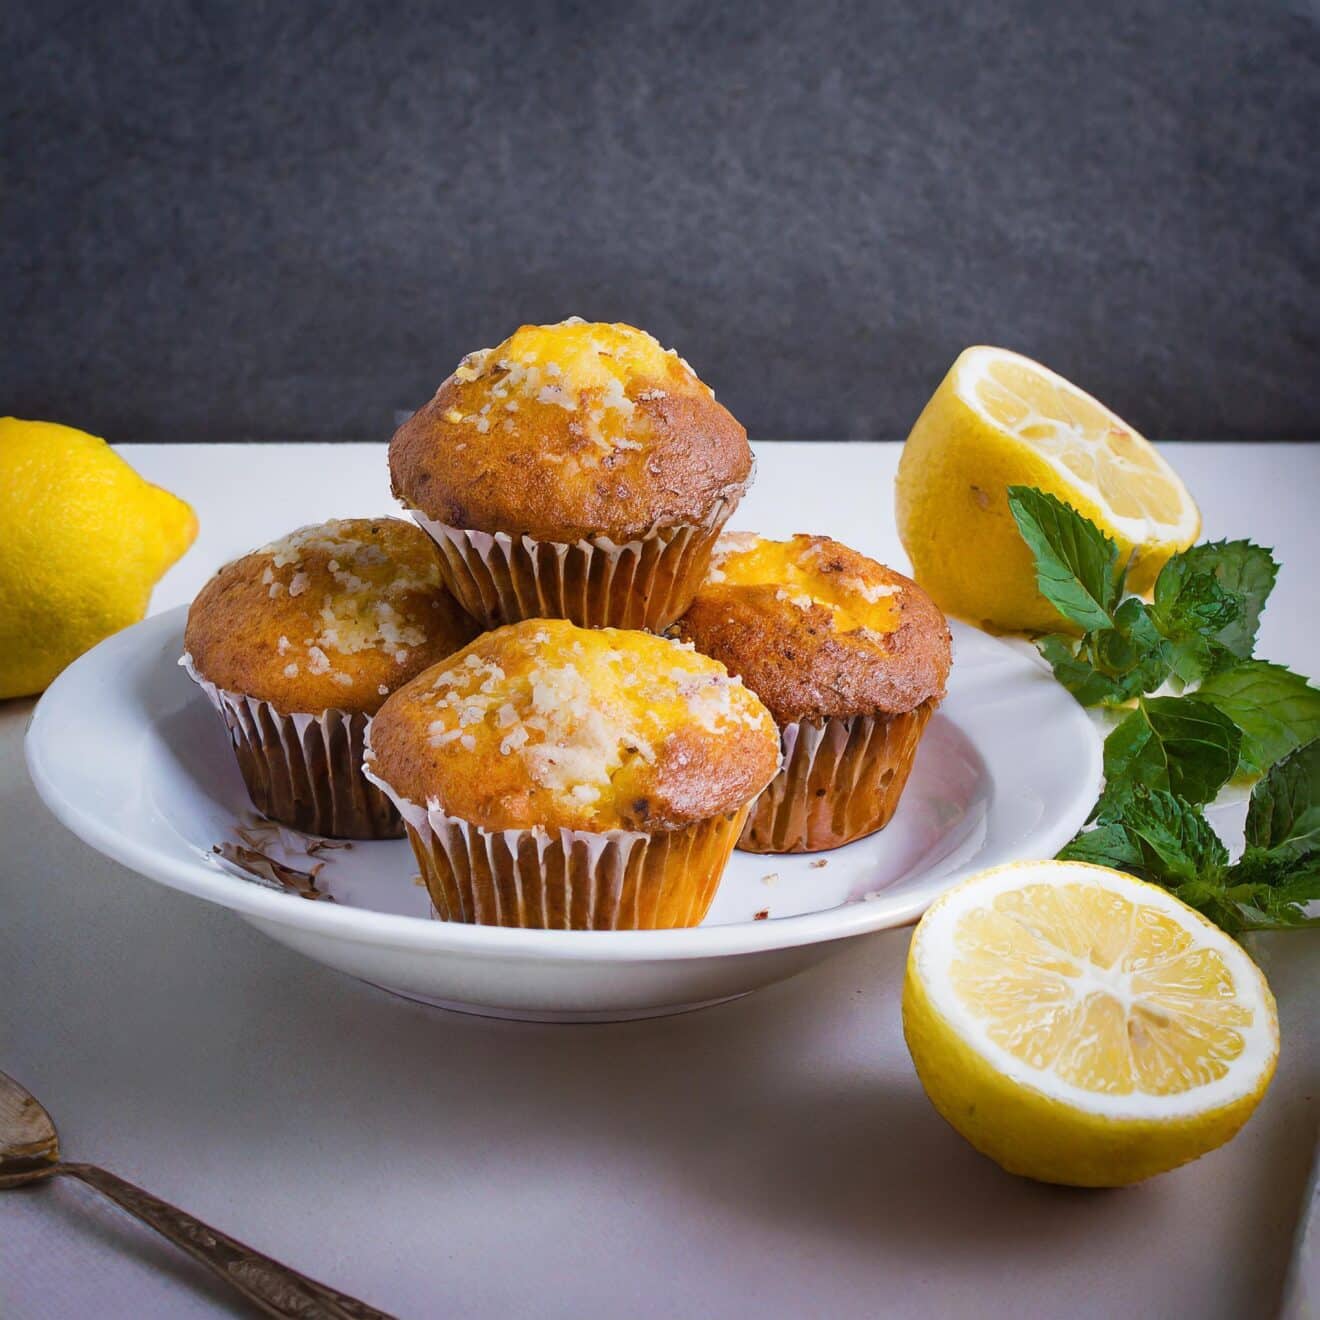 Le secret pour réussir des muffins au citron si moelleux